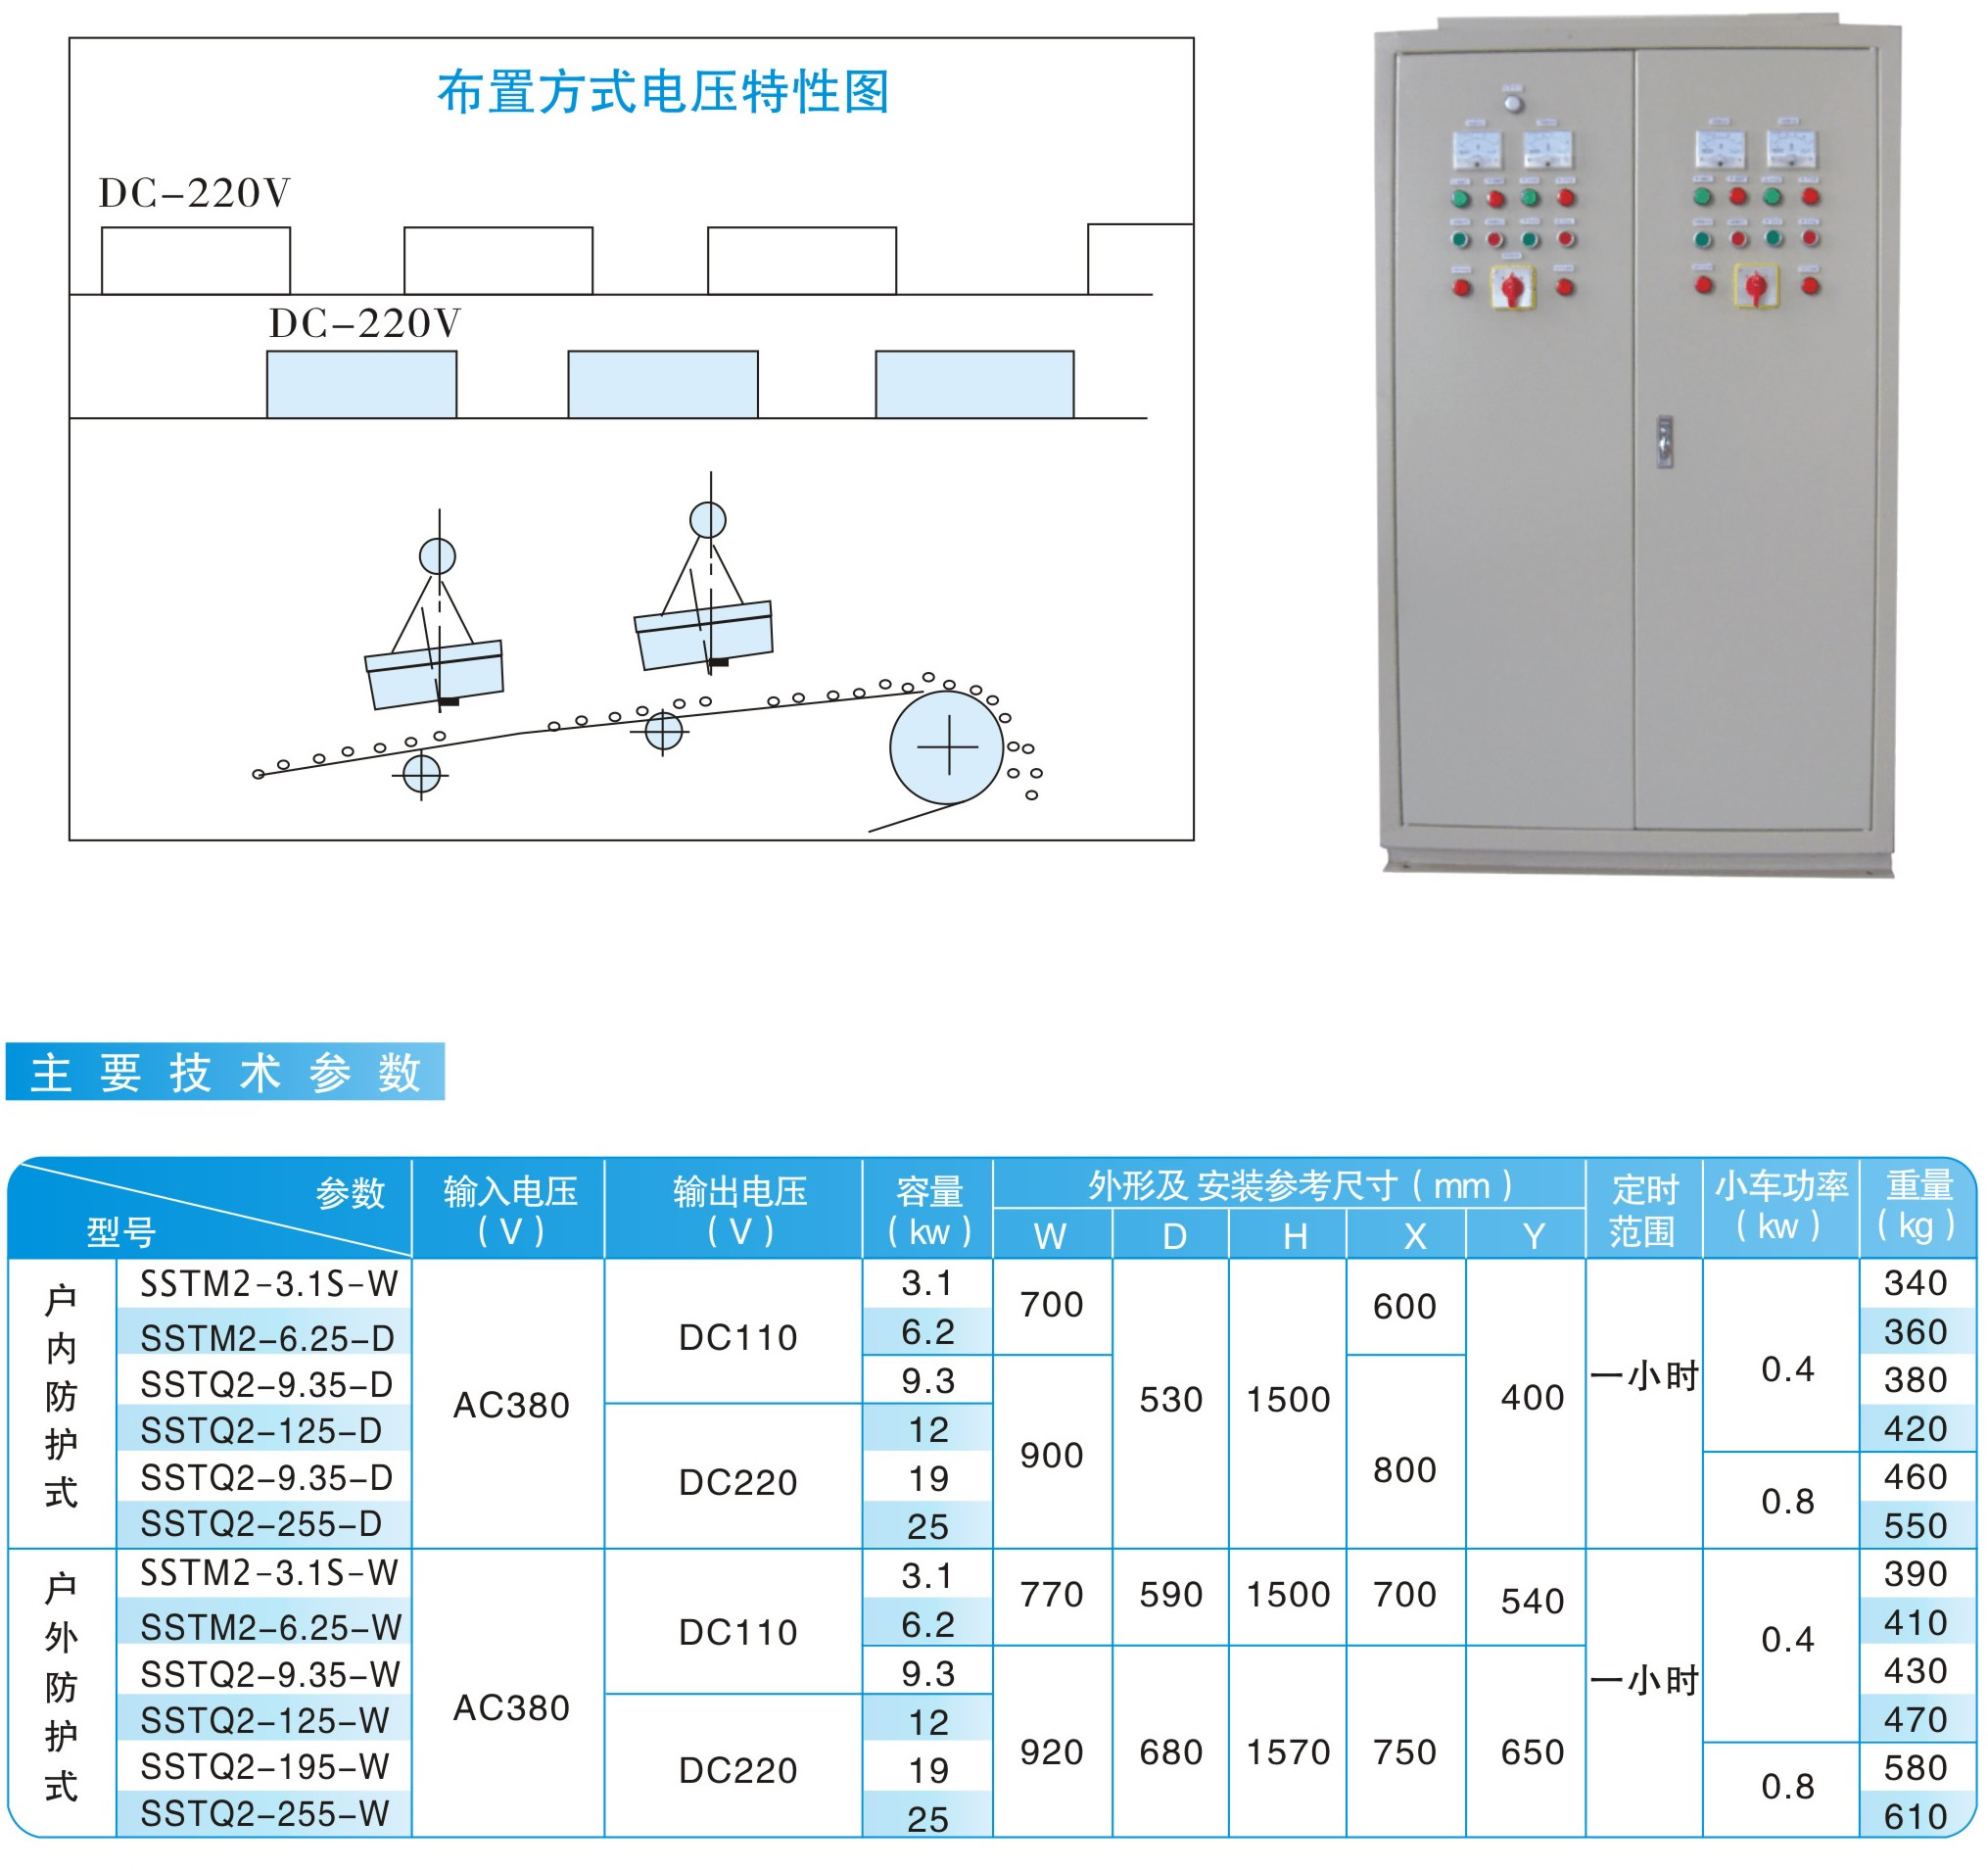 MC03（RCDB）、MC23（RCDB）系列两台除铁器交替运行用整流控制设备|鸿升科技